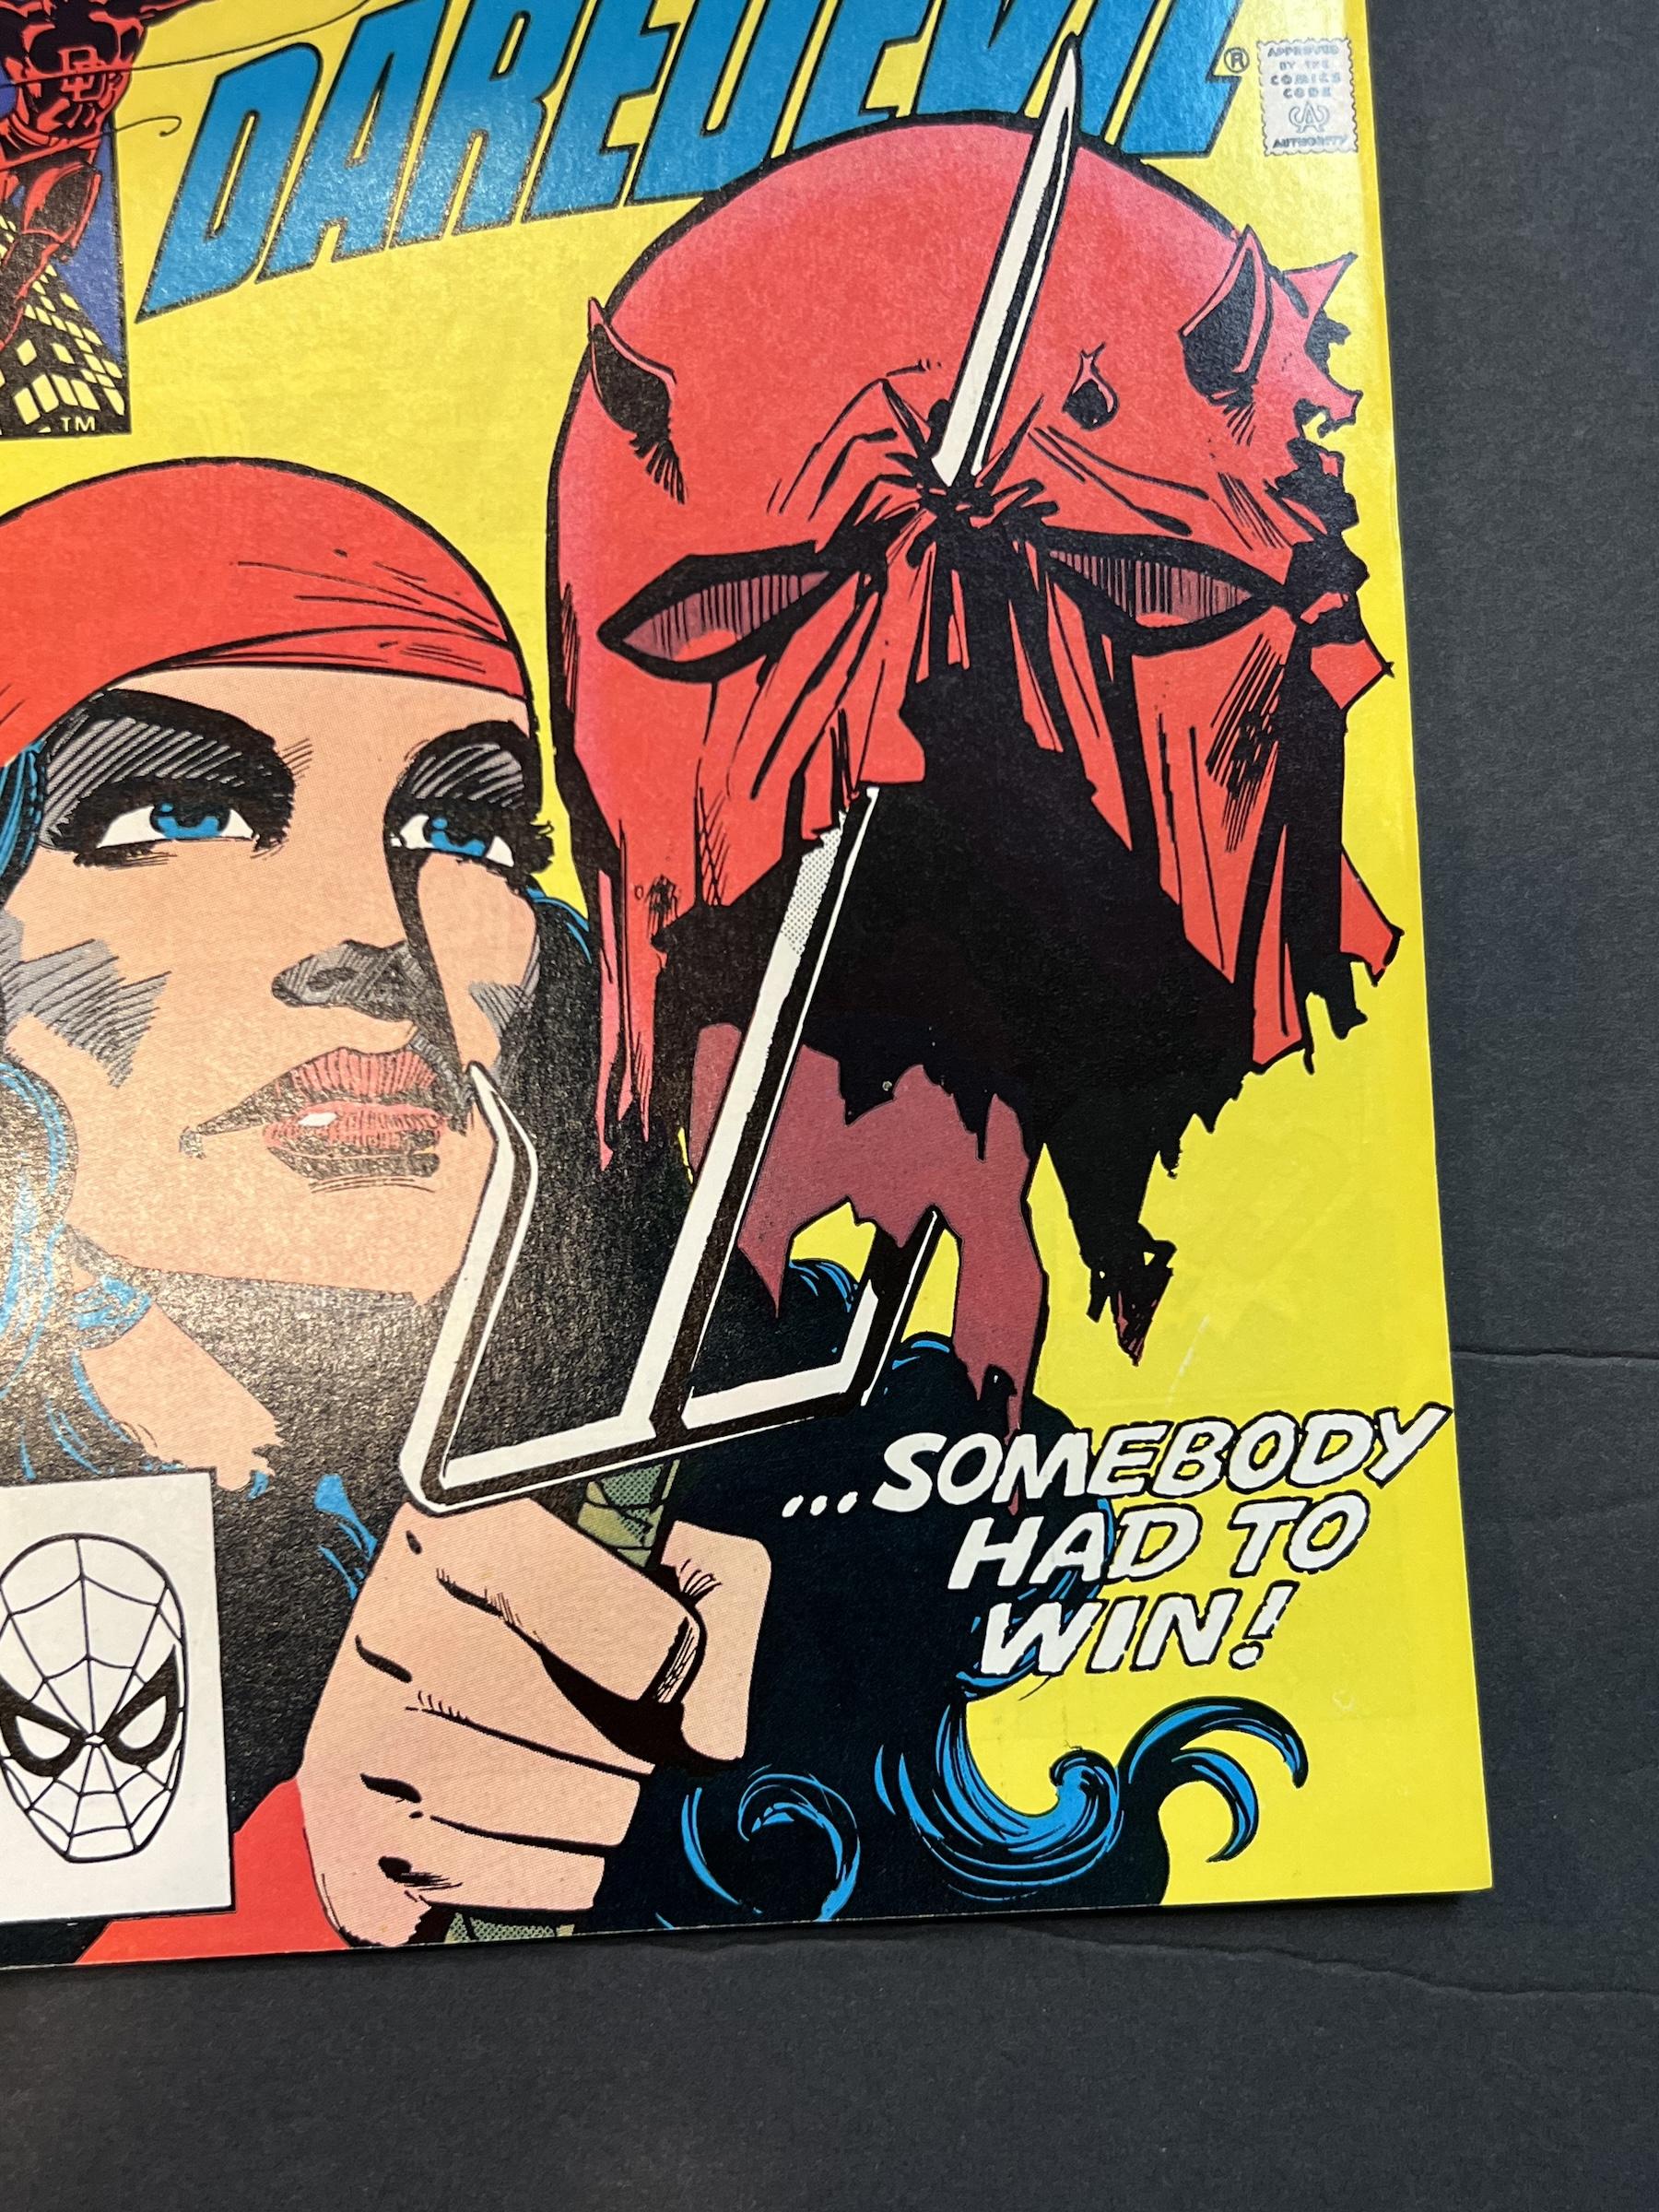 Daredevil #179 & #180 Marvel Comic Books